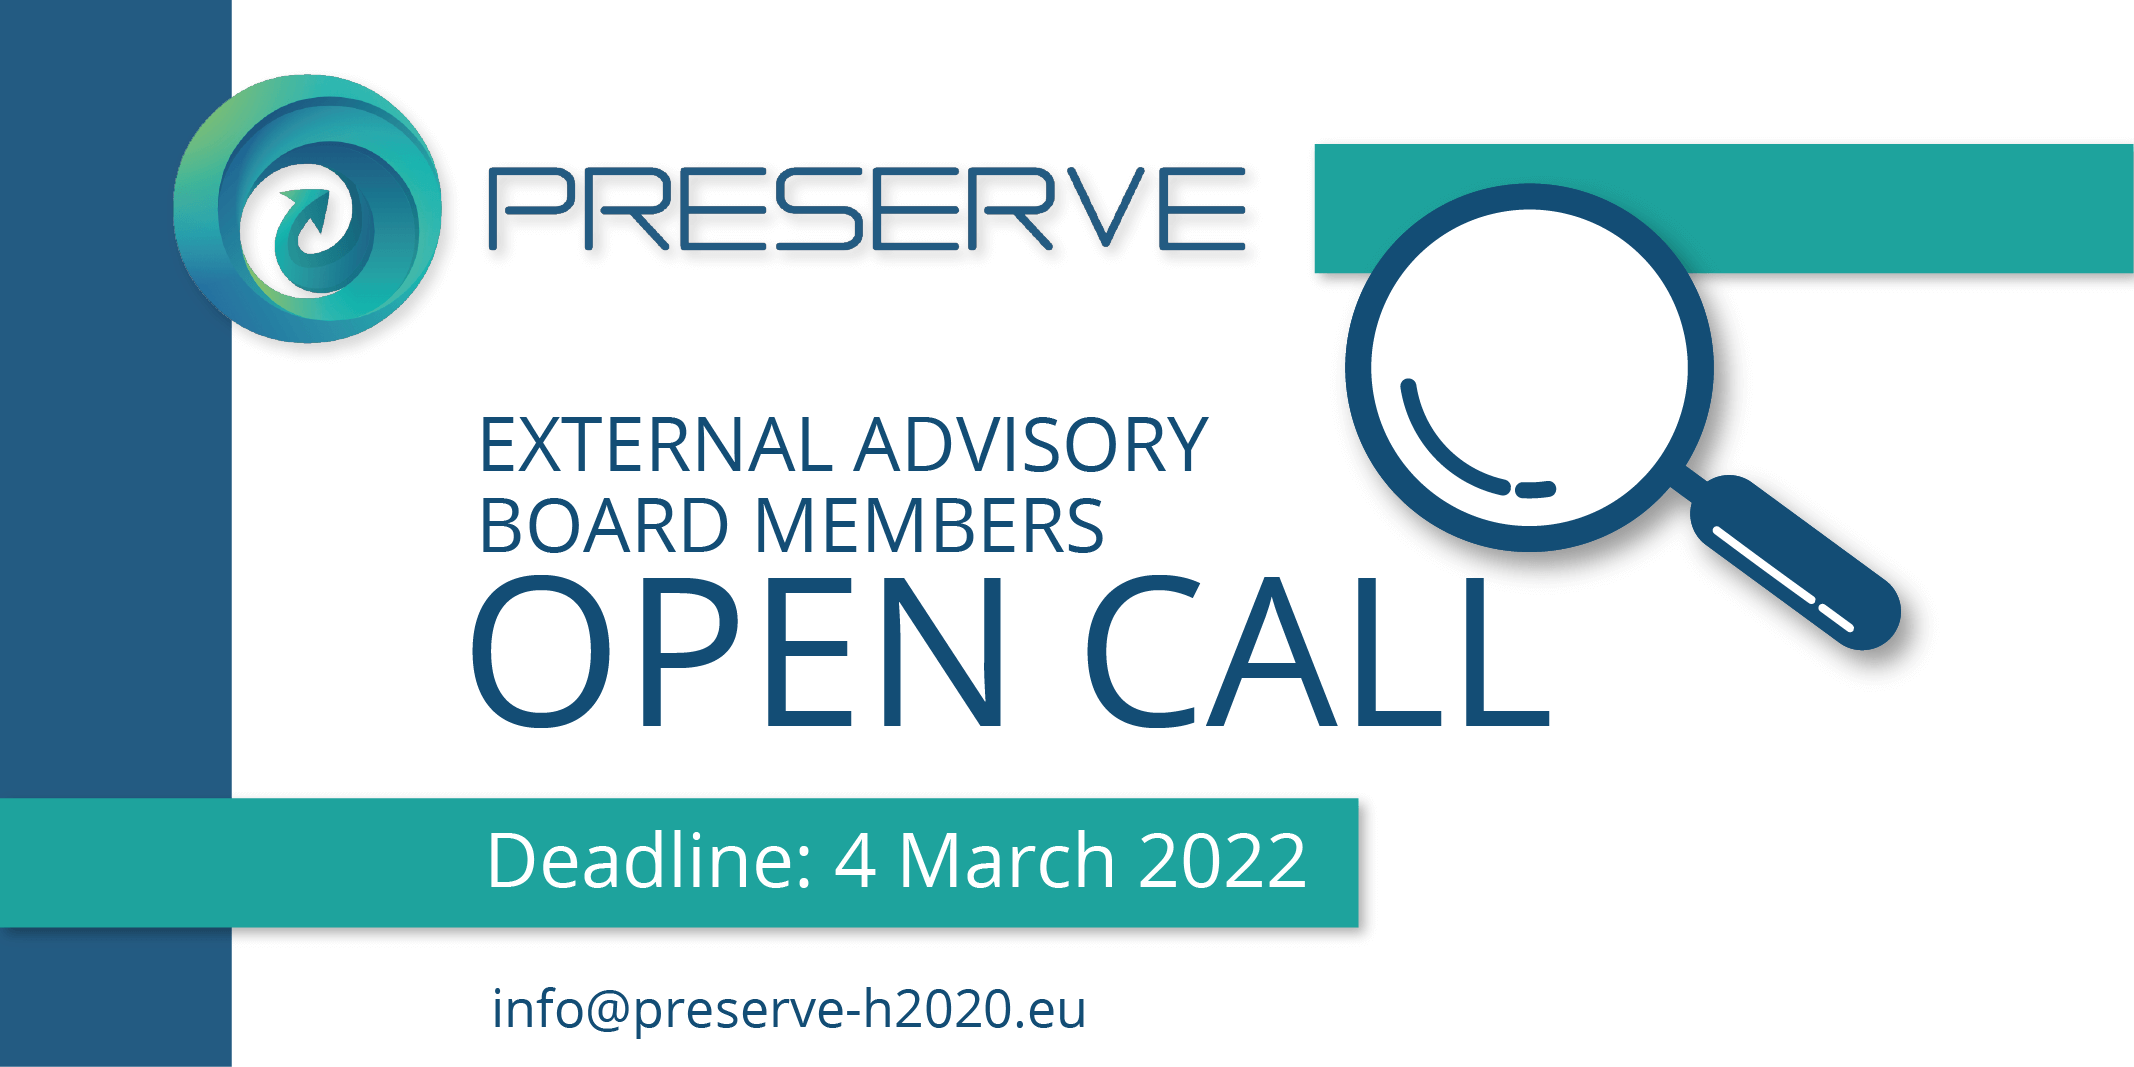 Preserve-open-call